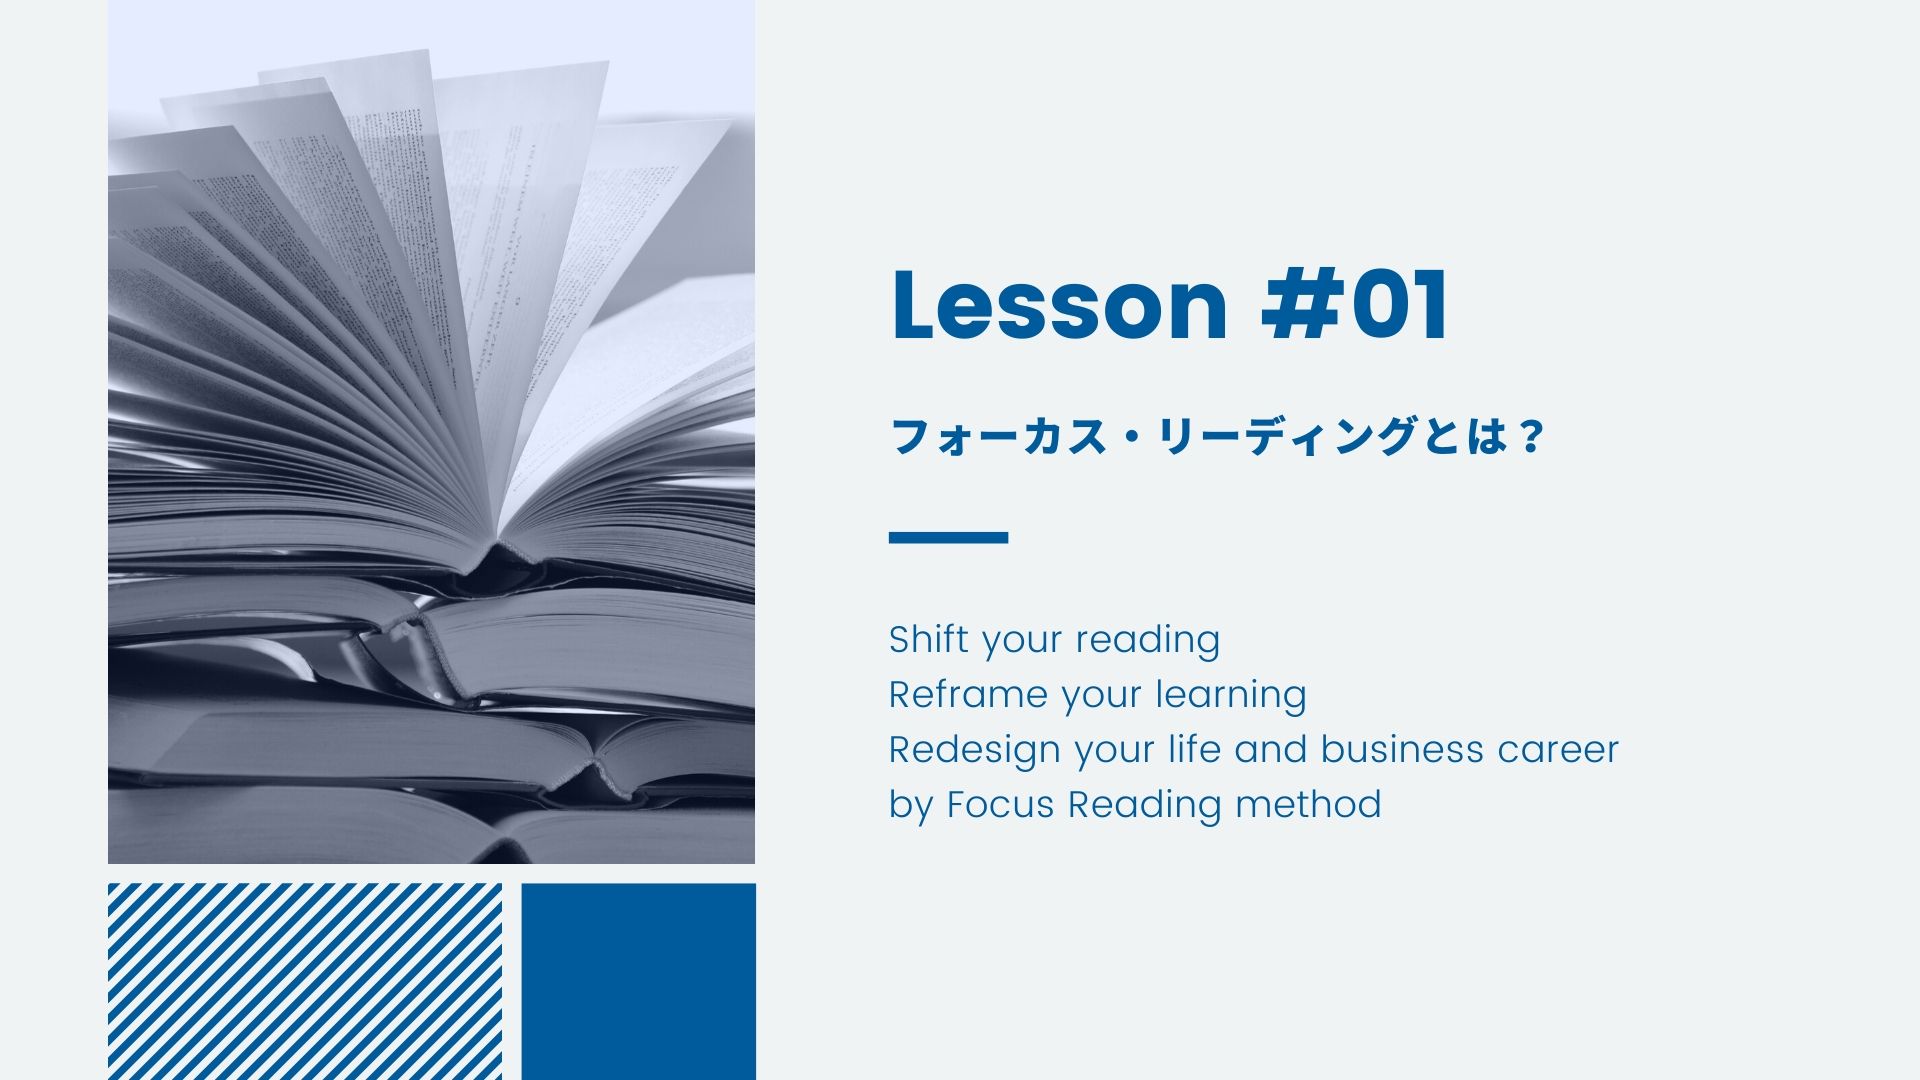 Lesson 01